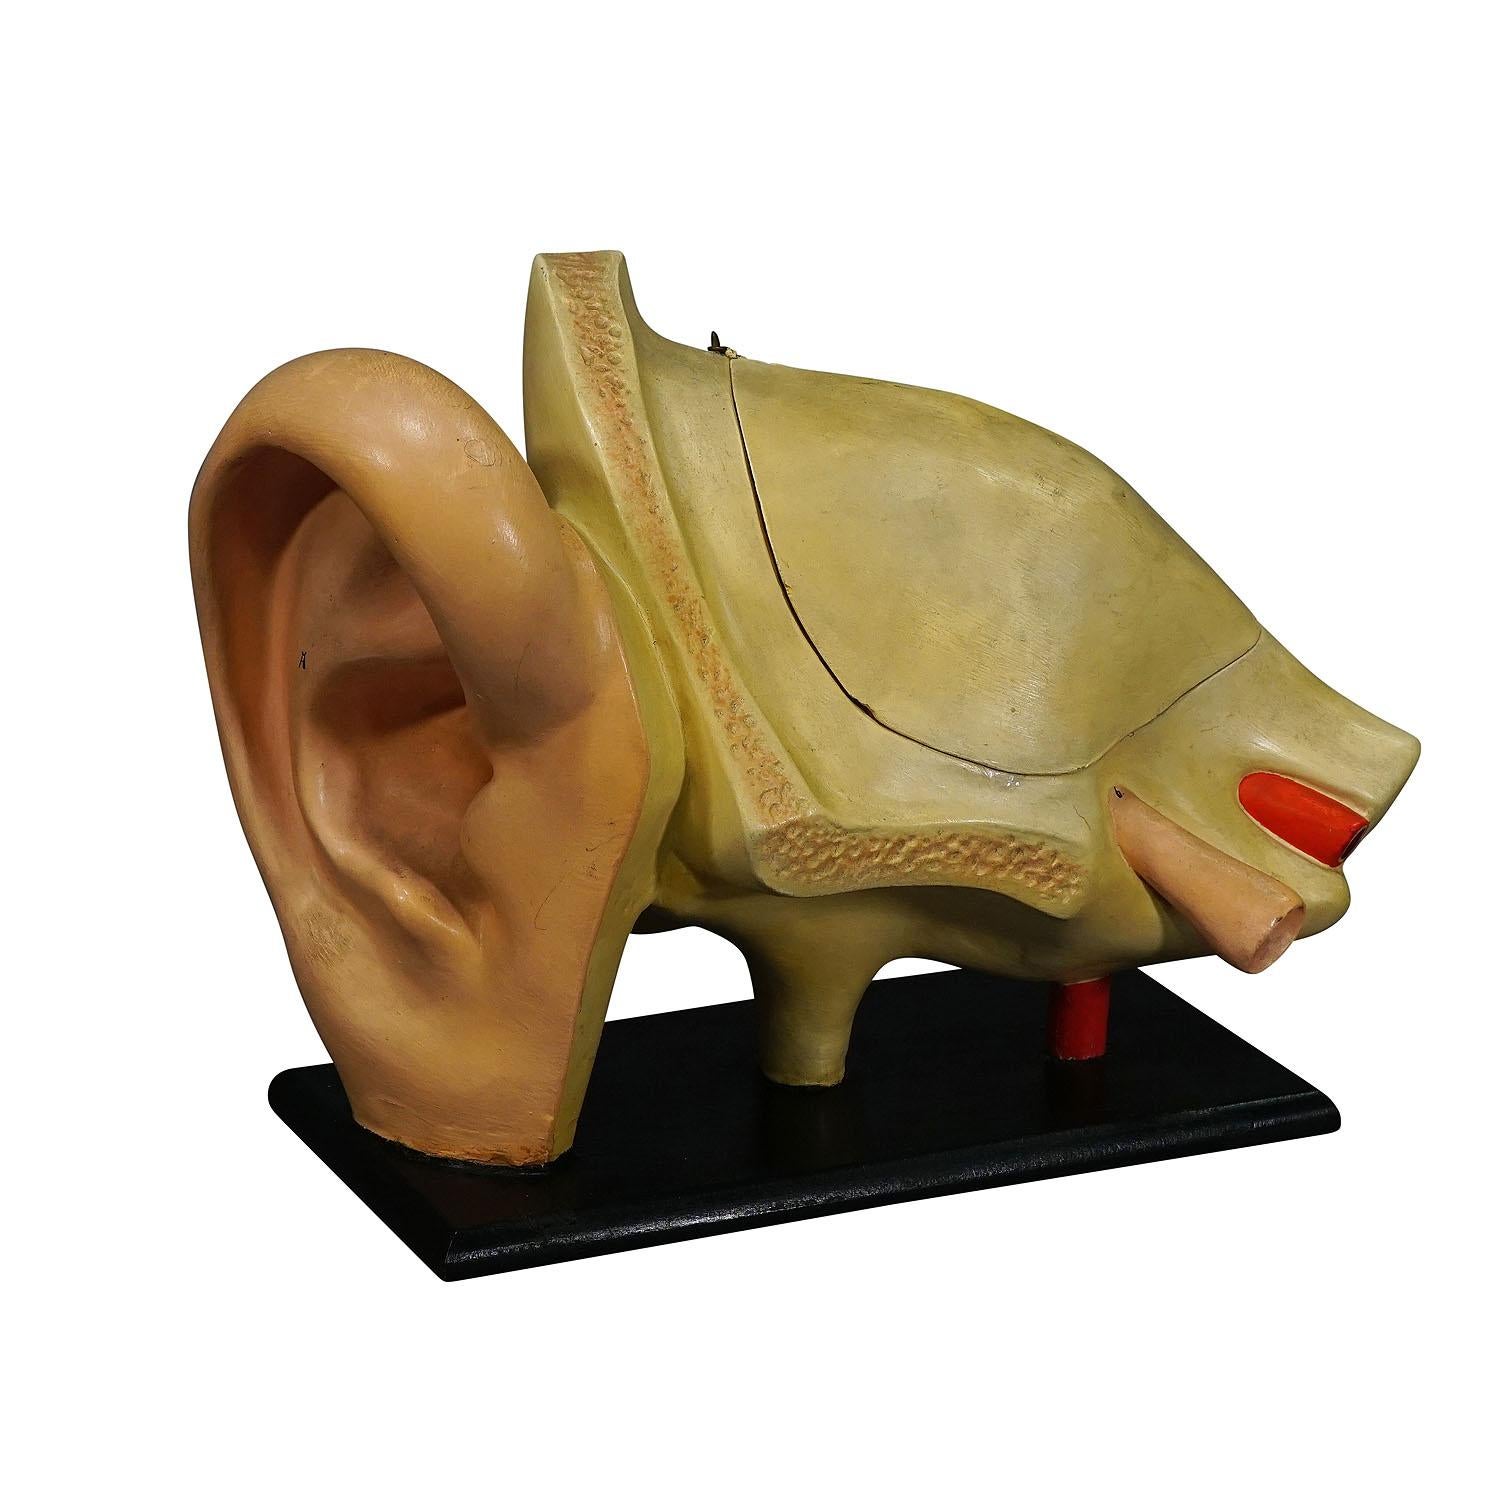 Modèle d'enseignement ancien d'une oreille - Somso vers 1900

Modèle d'oreille en Foldes. Il a été utilisé comme matériel pédagogique dans les écoles allemandes vers 1900. Elle est fabriquée en bois et en papier mâché par Somso, Allemagne.

Artfour